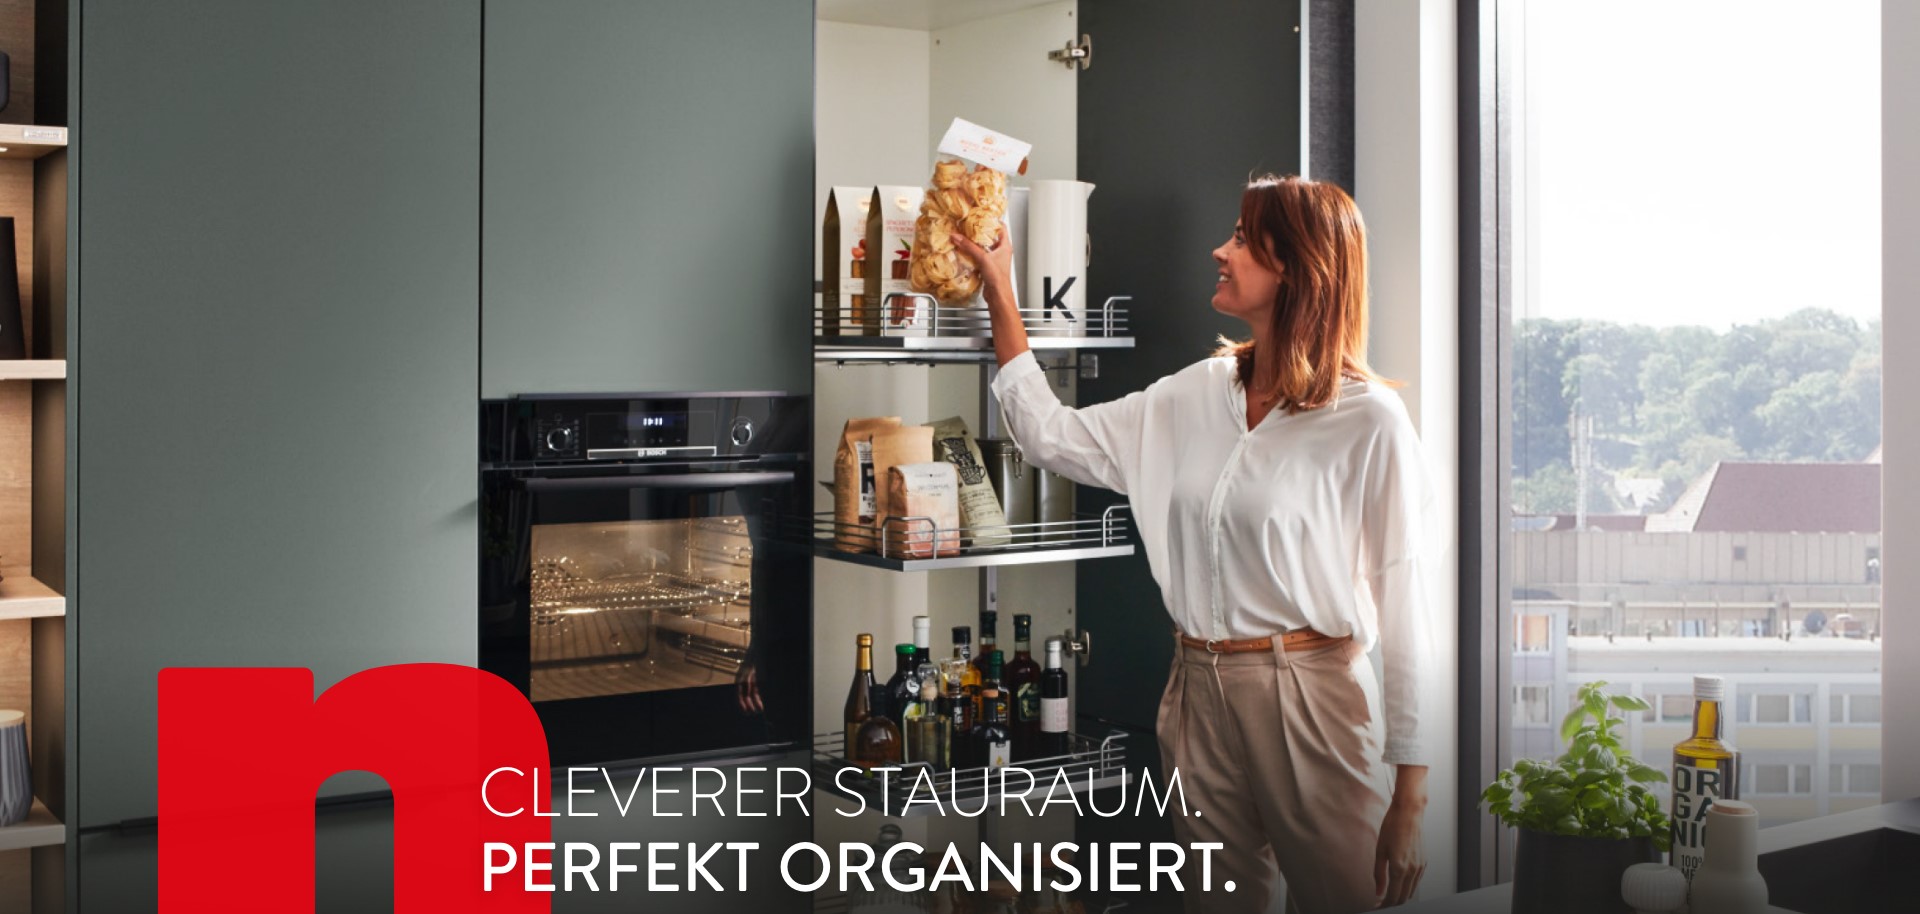 Cleverer Stauraum in Ihrer Küche. Immer perfekt organisiert.